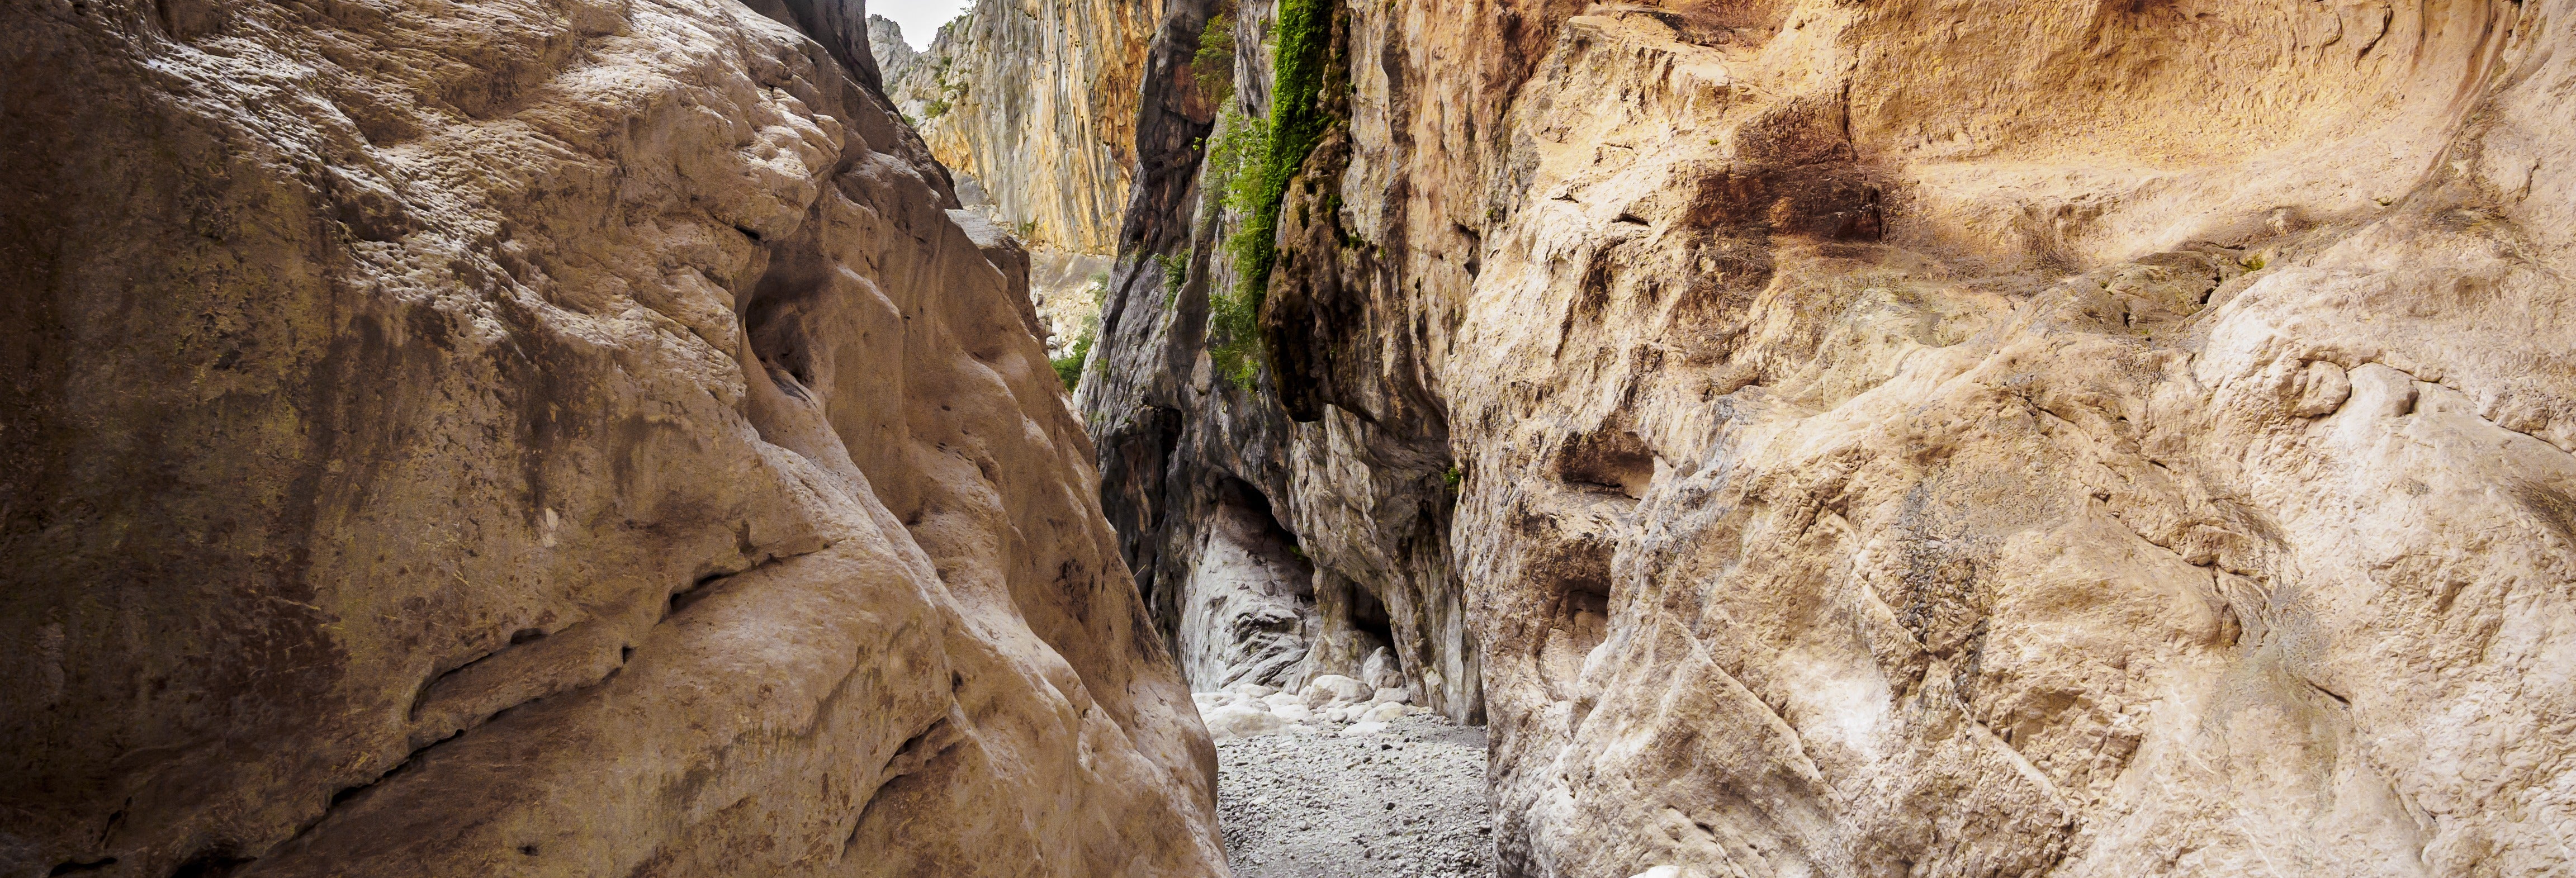 Escursione al Canyon Gorropu da Cala Gonone